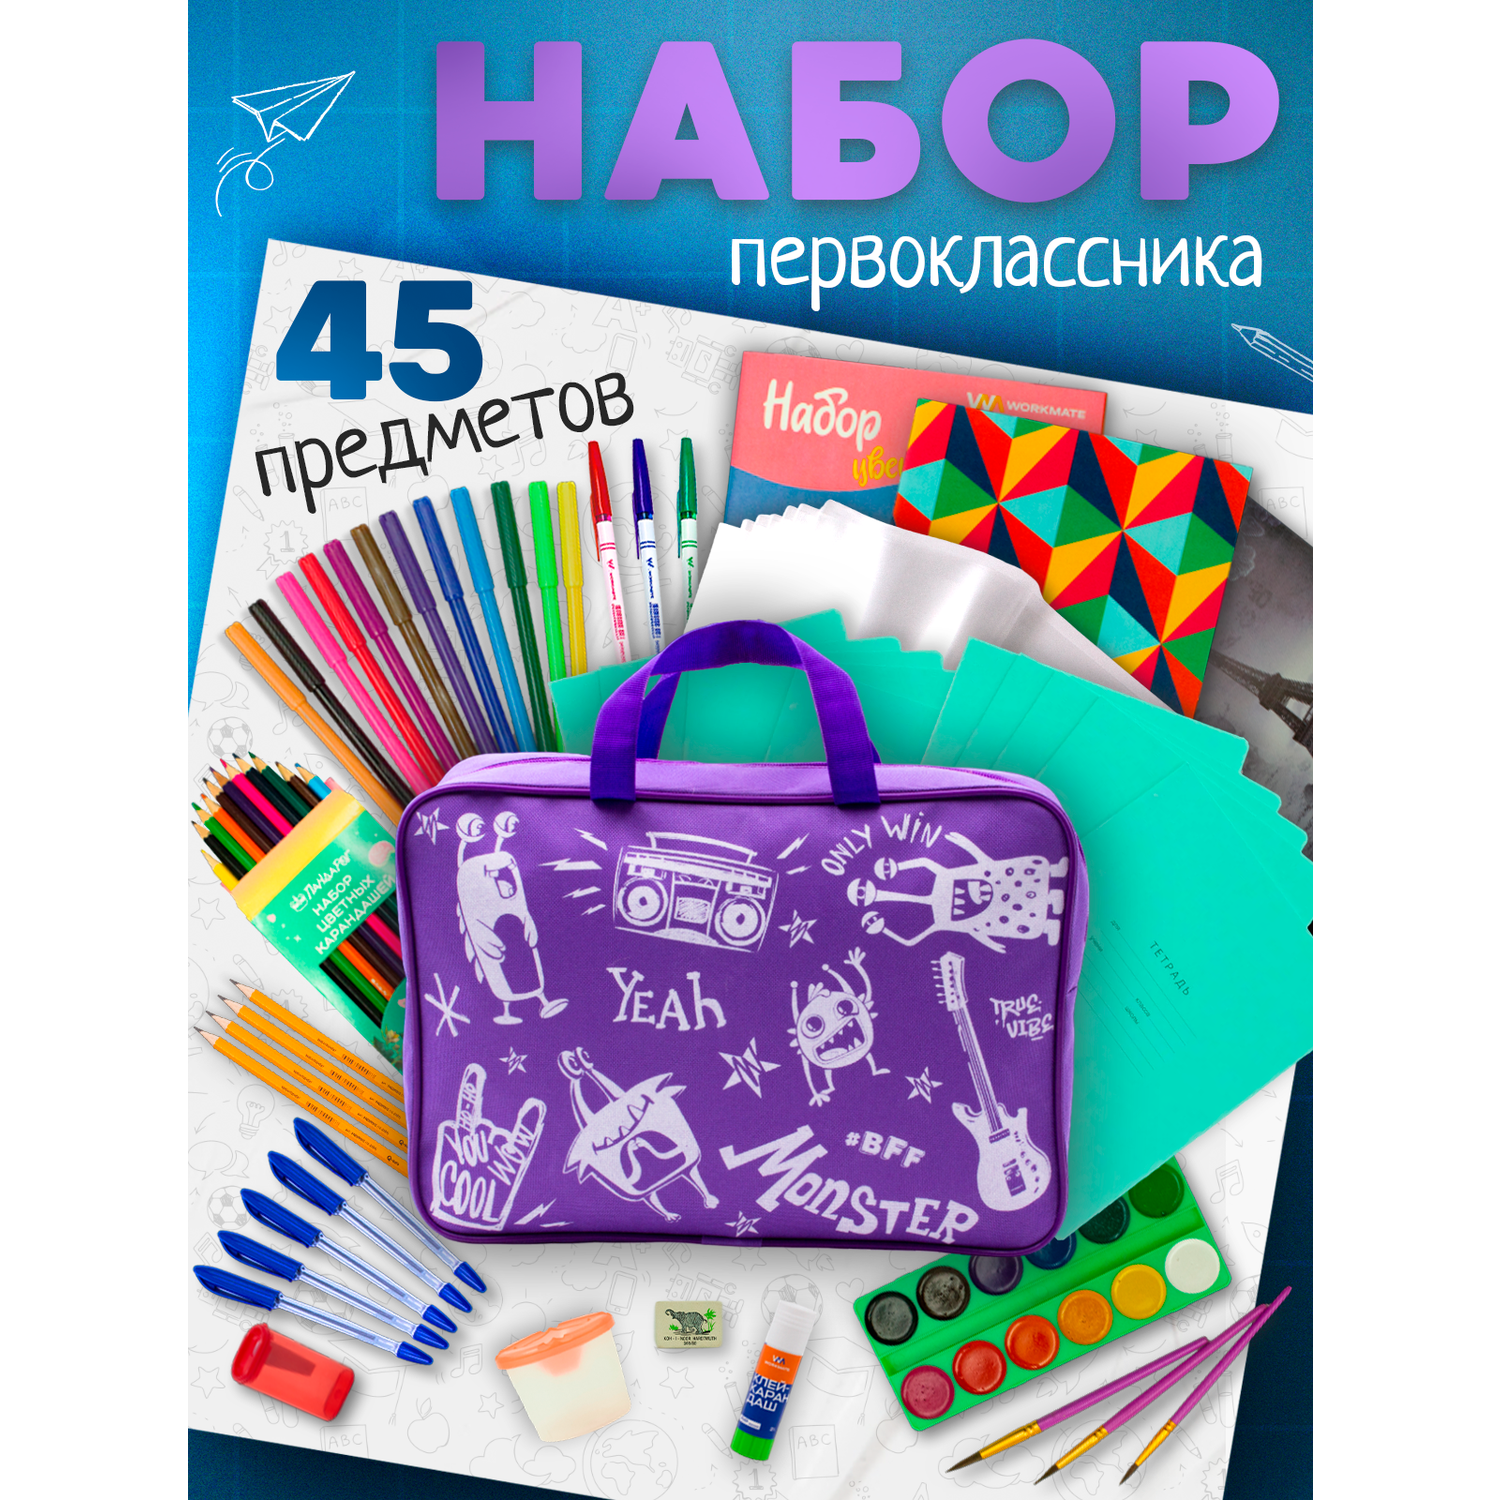 Набор первоклассника ПАНДАРОГ 45 предметов фиолетовая сумка - фото 1